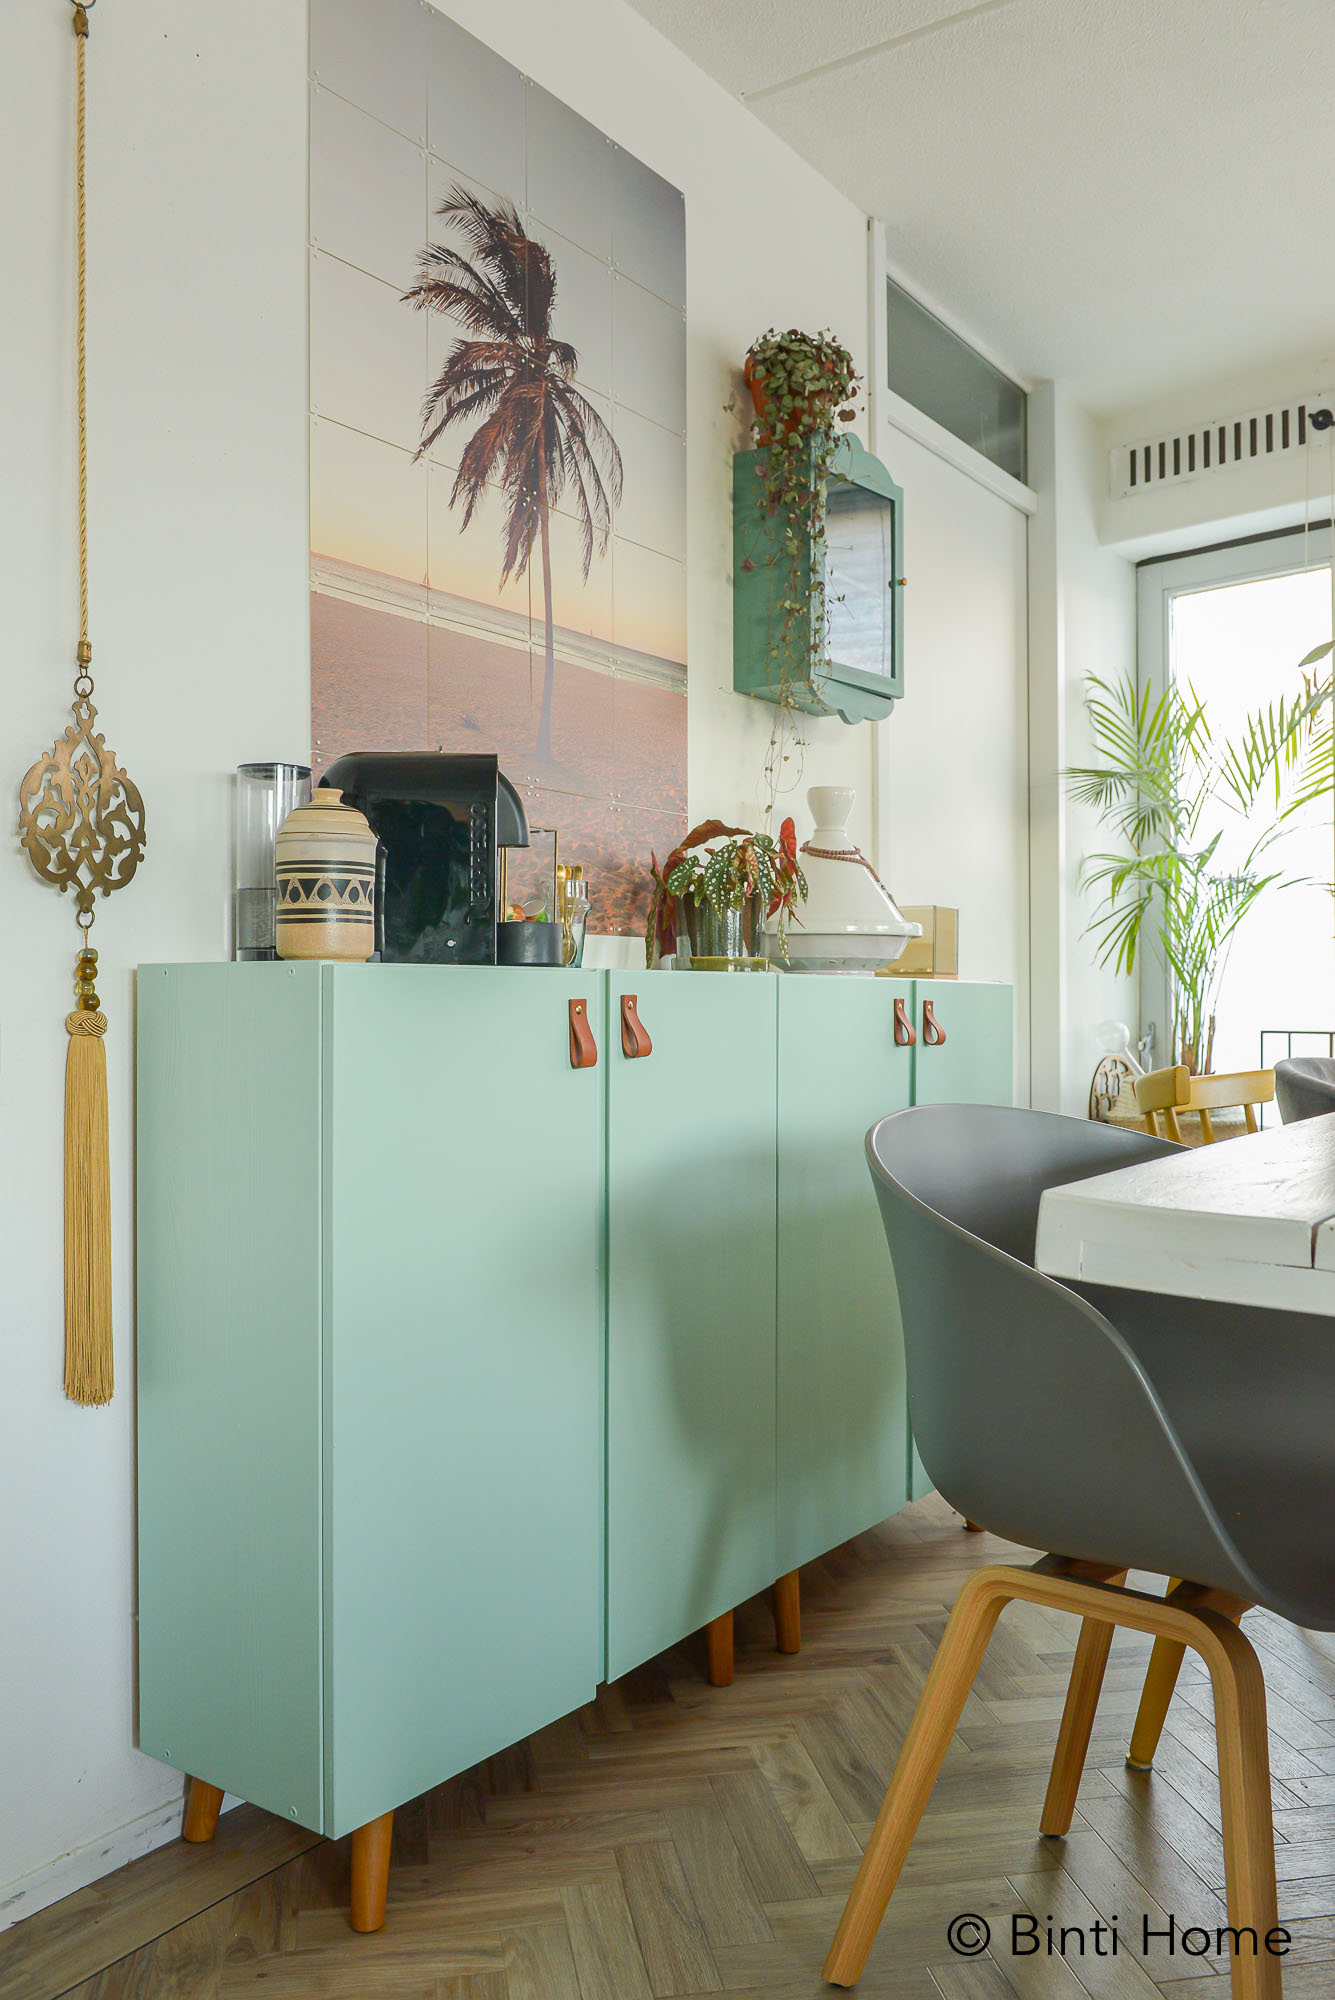 DIY kast schilderen in mint groen met Mooi makkelijk van Binti Home | Interieurontwerpstudio & inspiratie blog